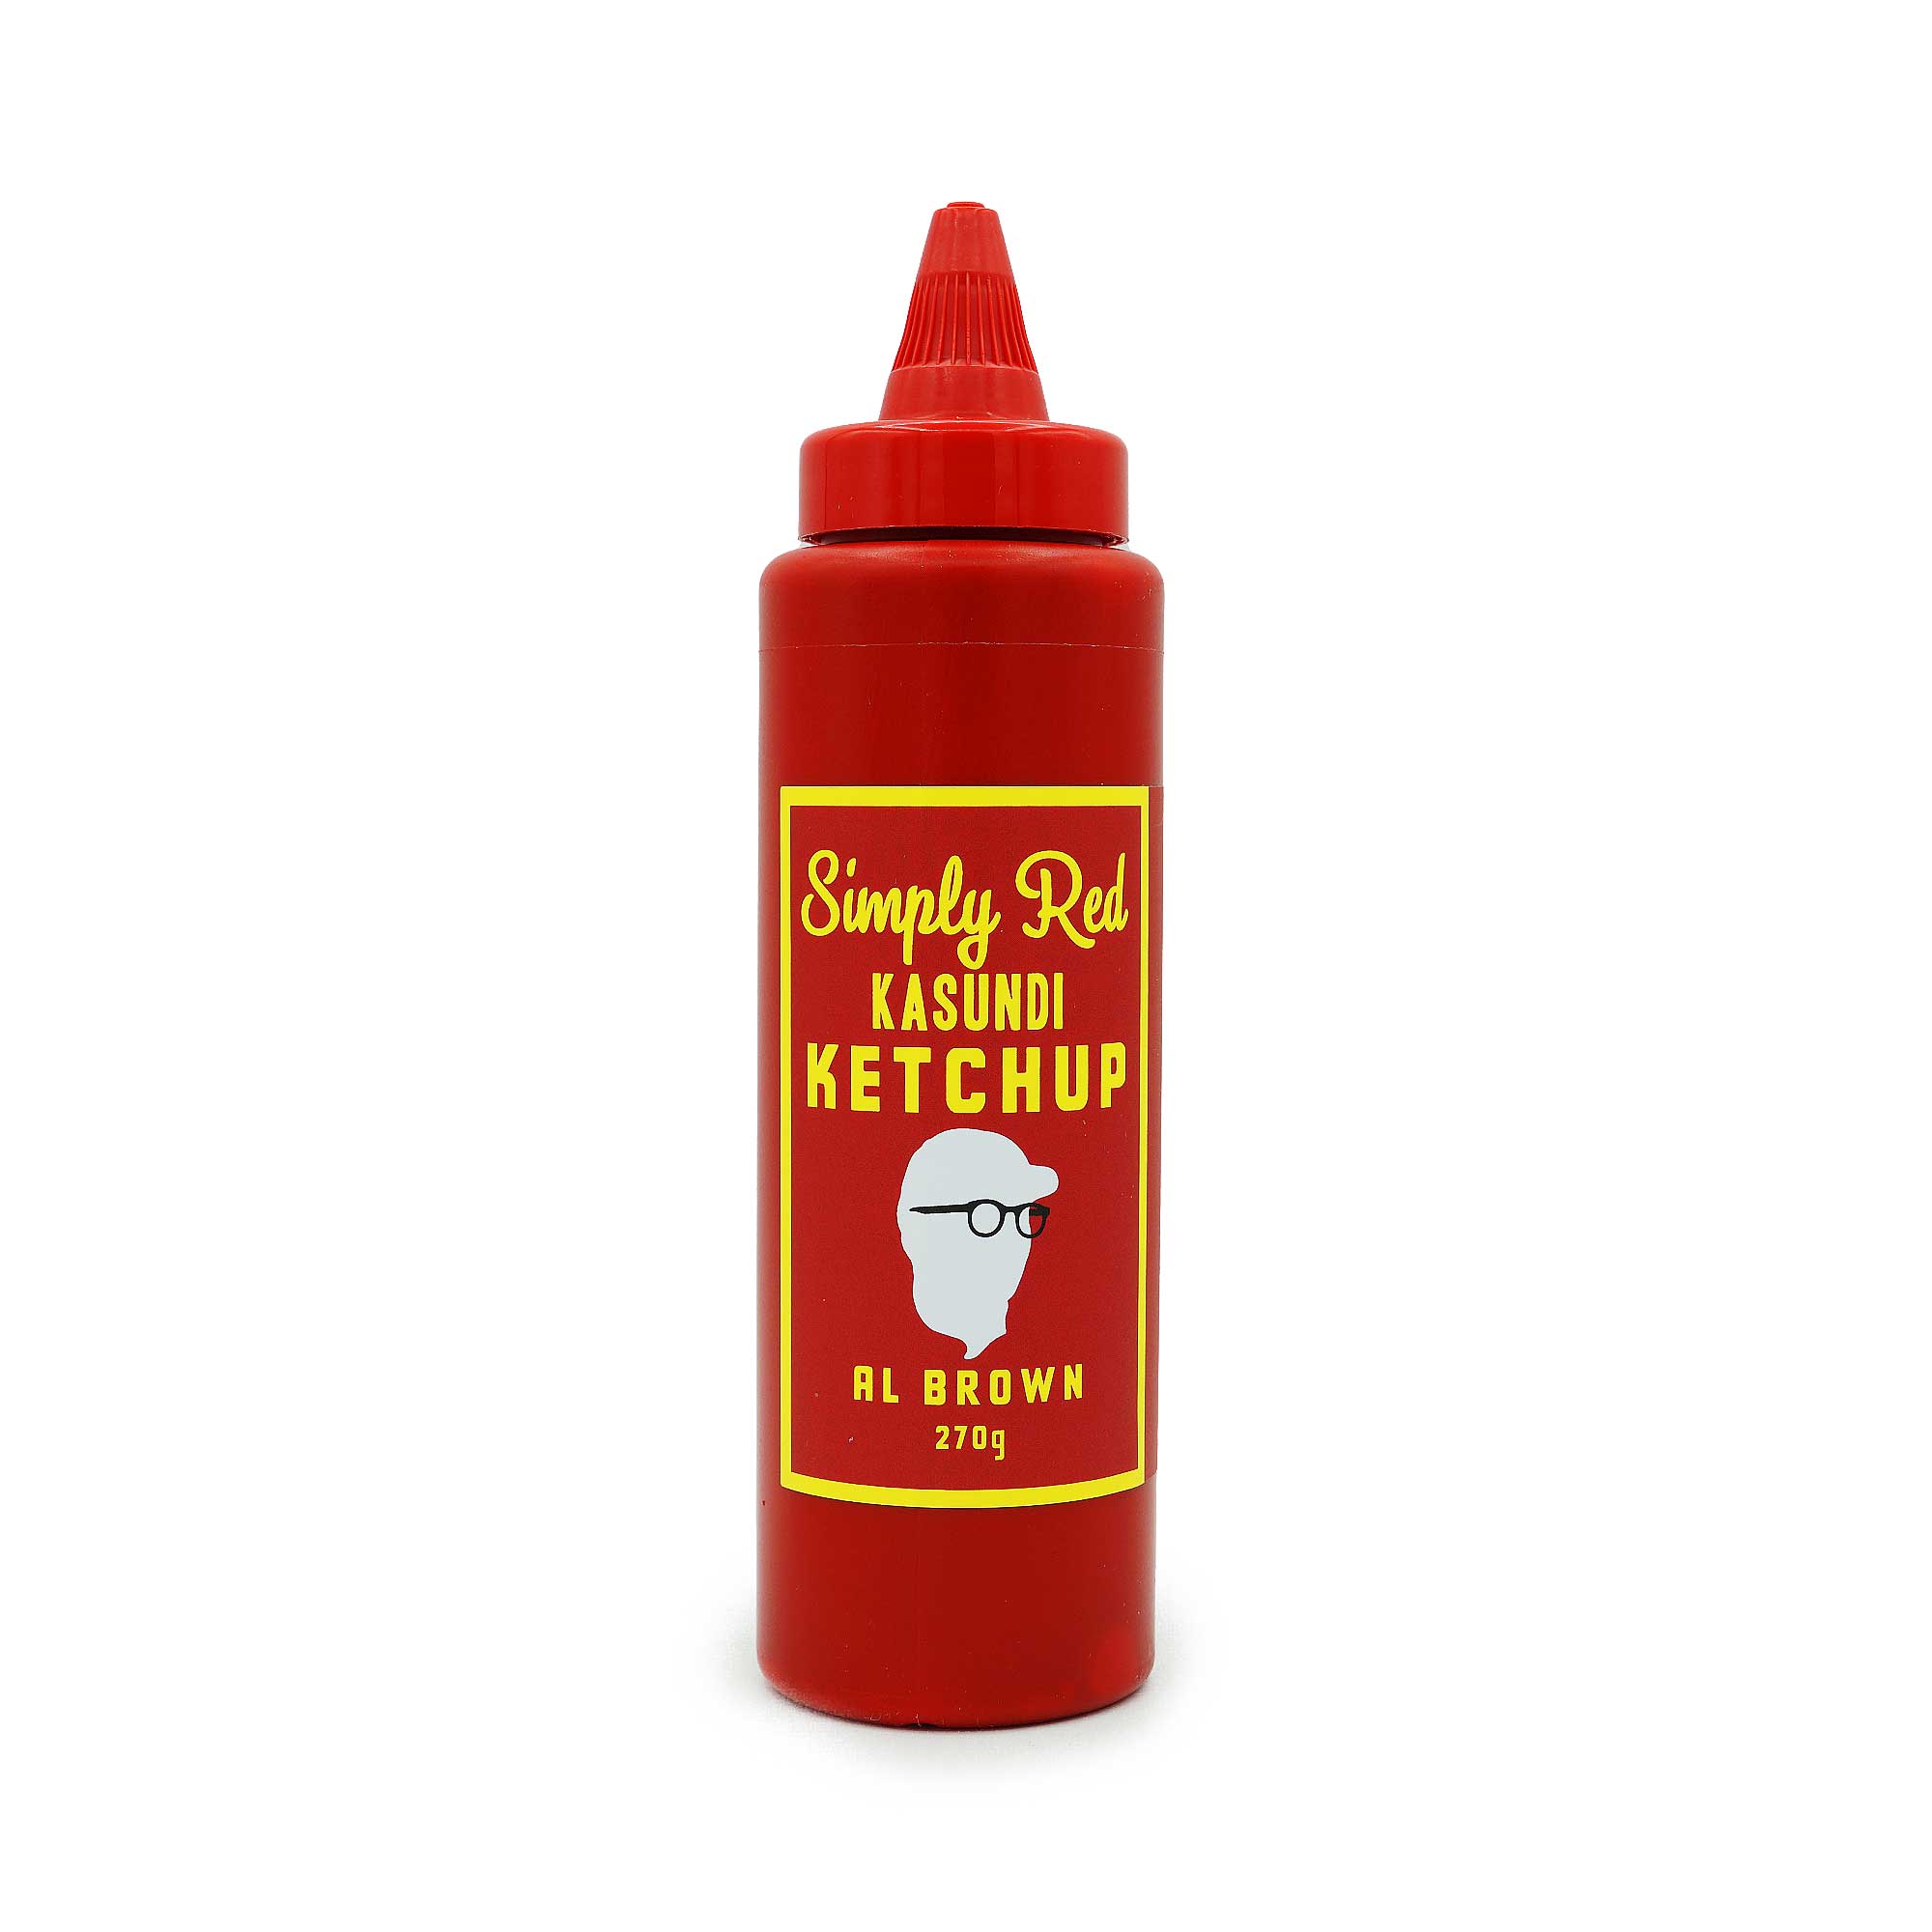 Al Brown - Al Brown - Simply Red Kasundi Ketchup - Mat's Hot Shop - Australia's Hot Sauce Store